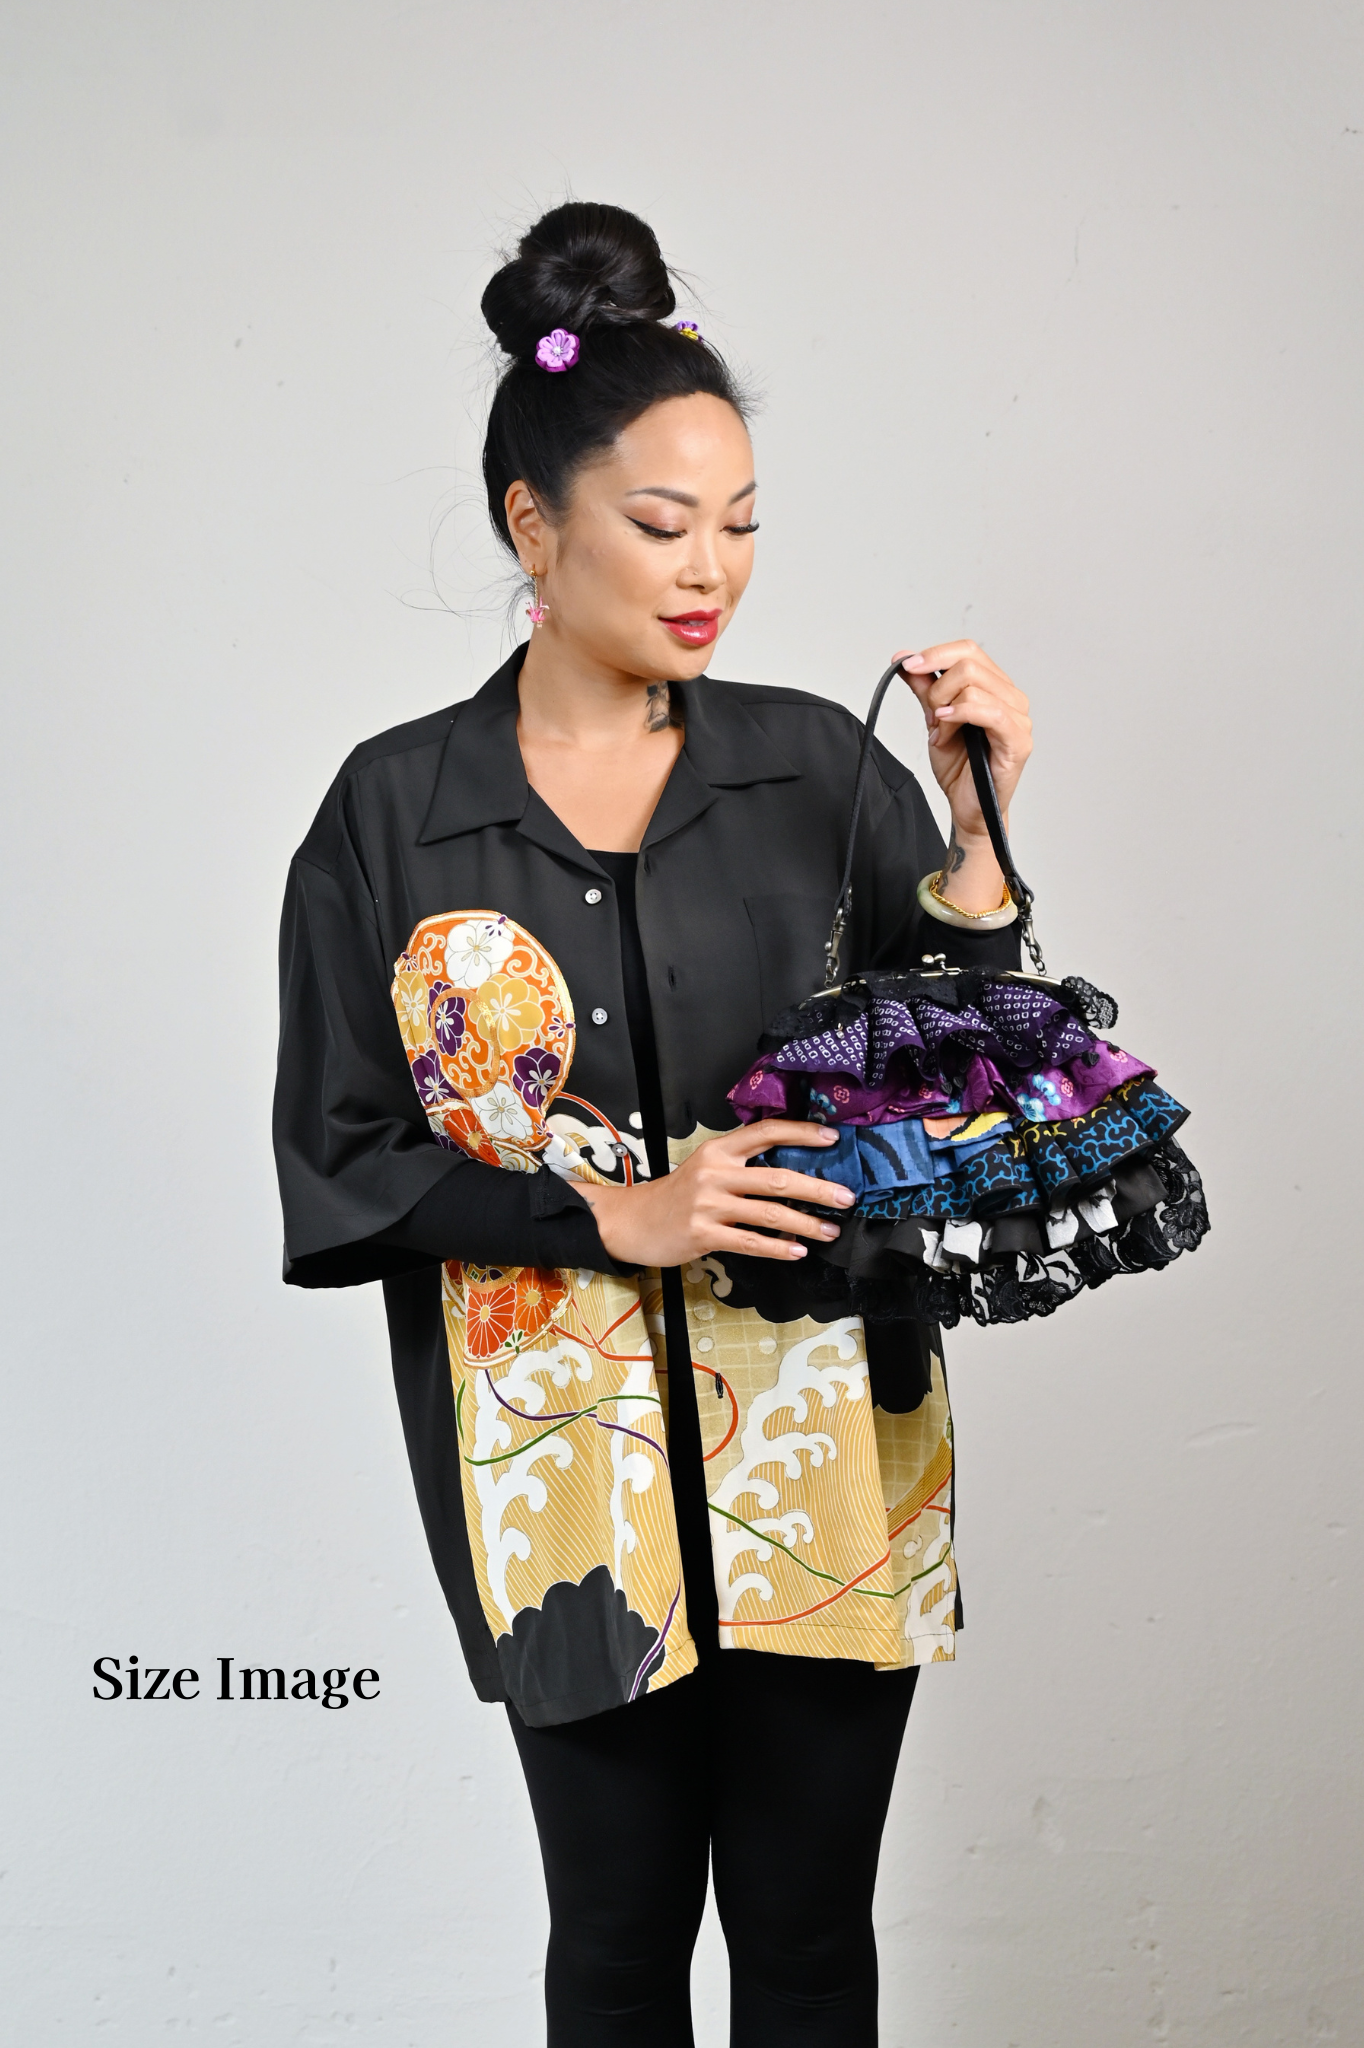 【Gogatsudo】 3way-handbag / marine, indigo, meisen antique, fioritures, embrayage, pochette, sac japonais, sac à bandoulière, cadeaux japonais